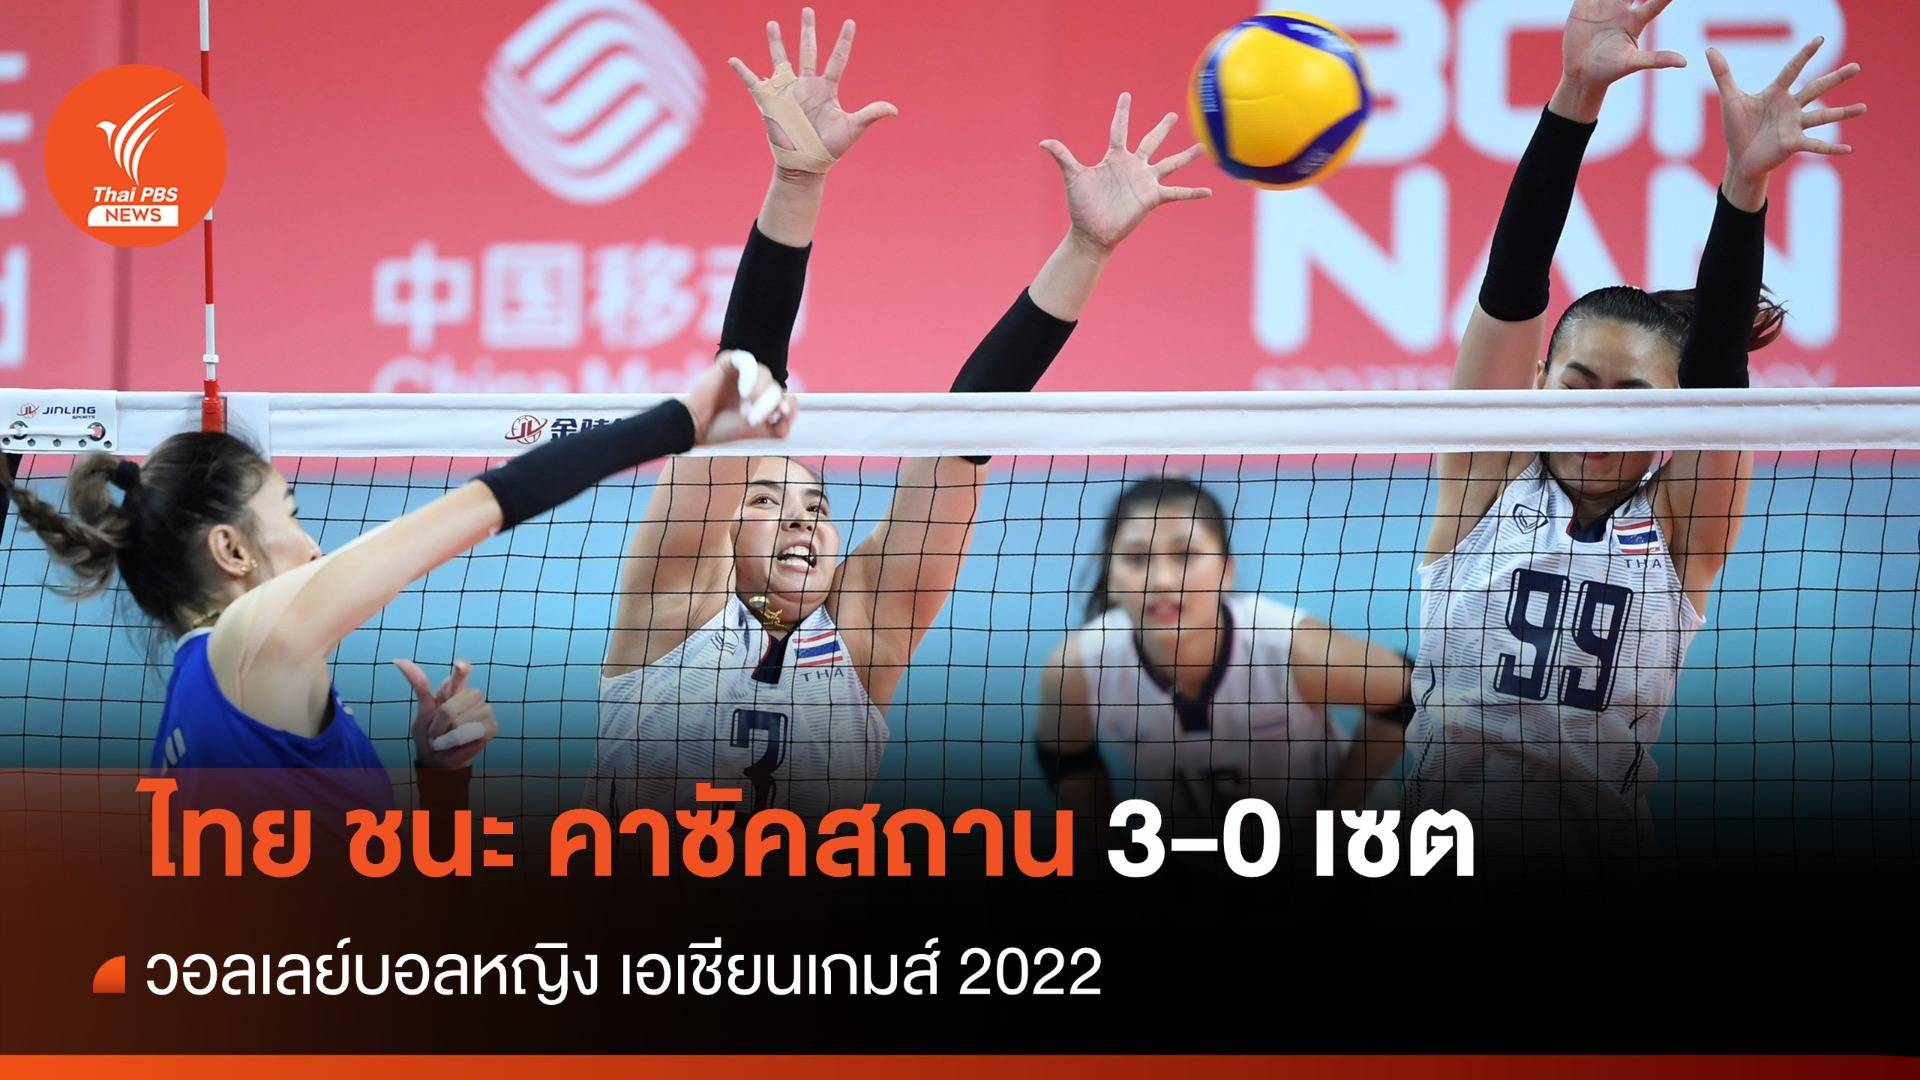 วอลเลย์บอลหญิงไทย ชนะ คาซัคสถาน 3 เซตรวด ศึกเอเชียนเกมส์